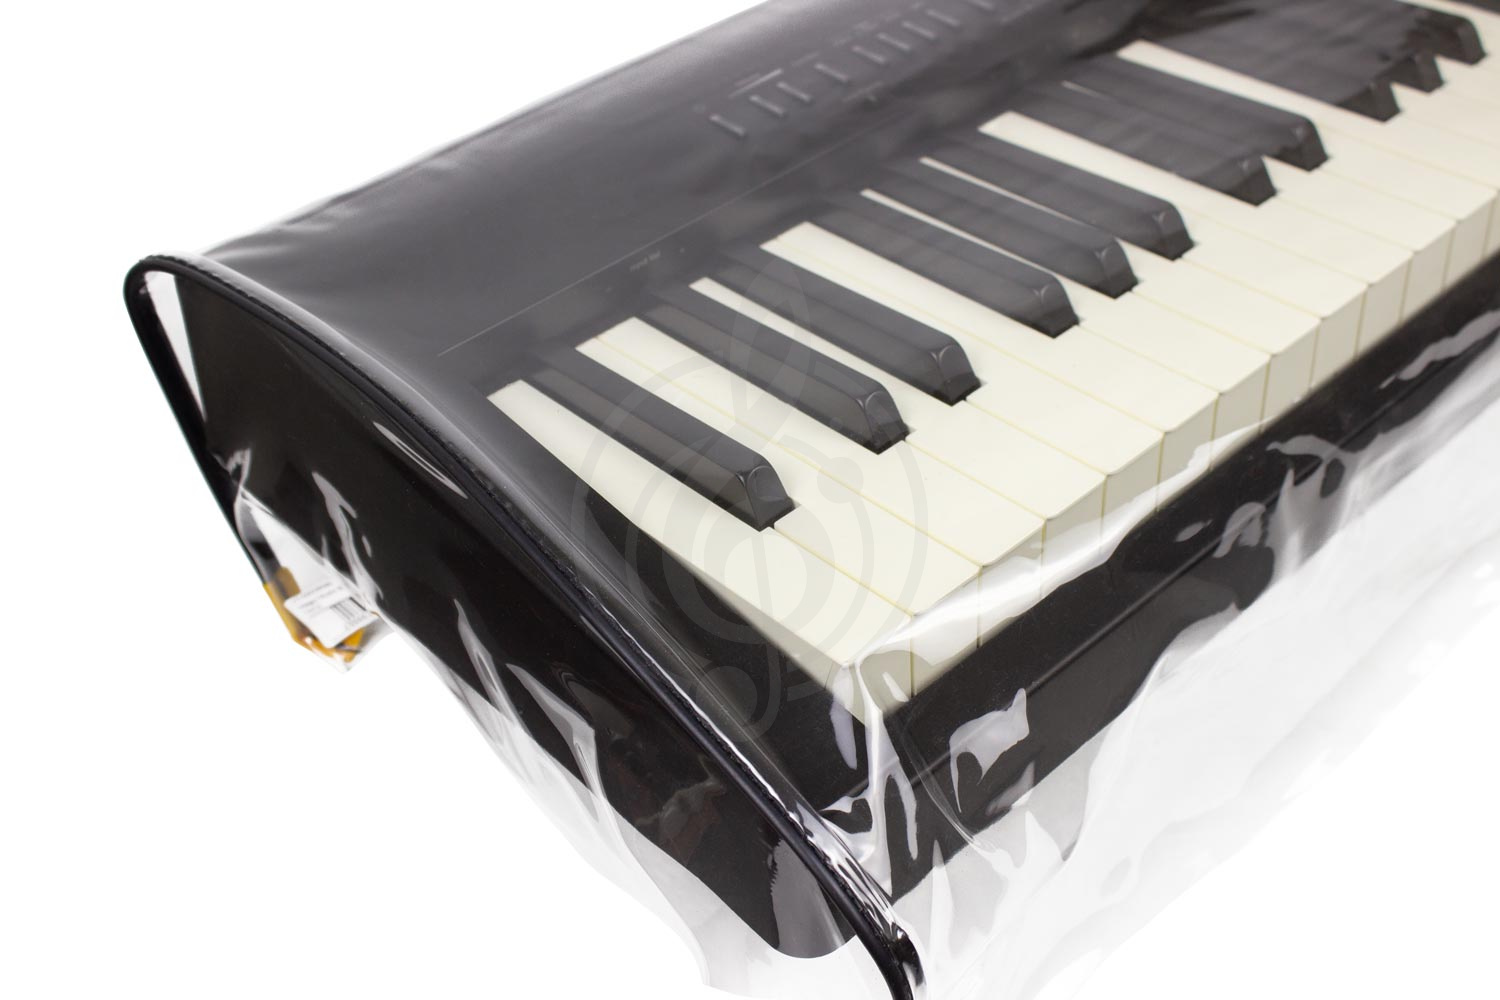 Накидка для цифровых пианино Чехлы для синтезаторов Magic Music Bag ПН-2 - прозрачная накидка для некорпусного цифрового пианино ПН-2 - фото 1